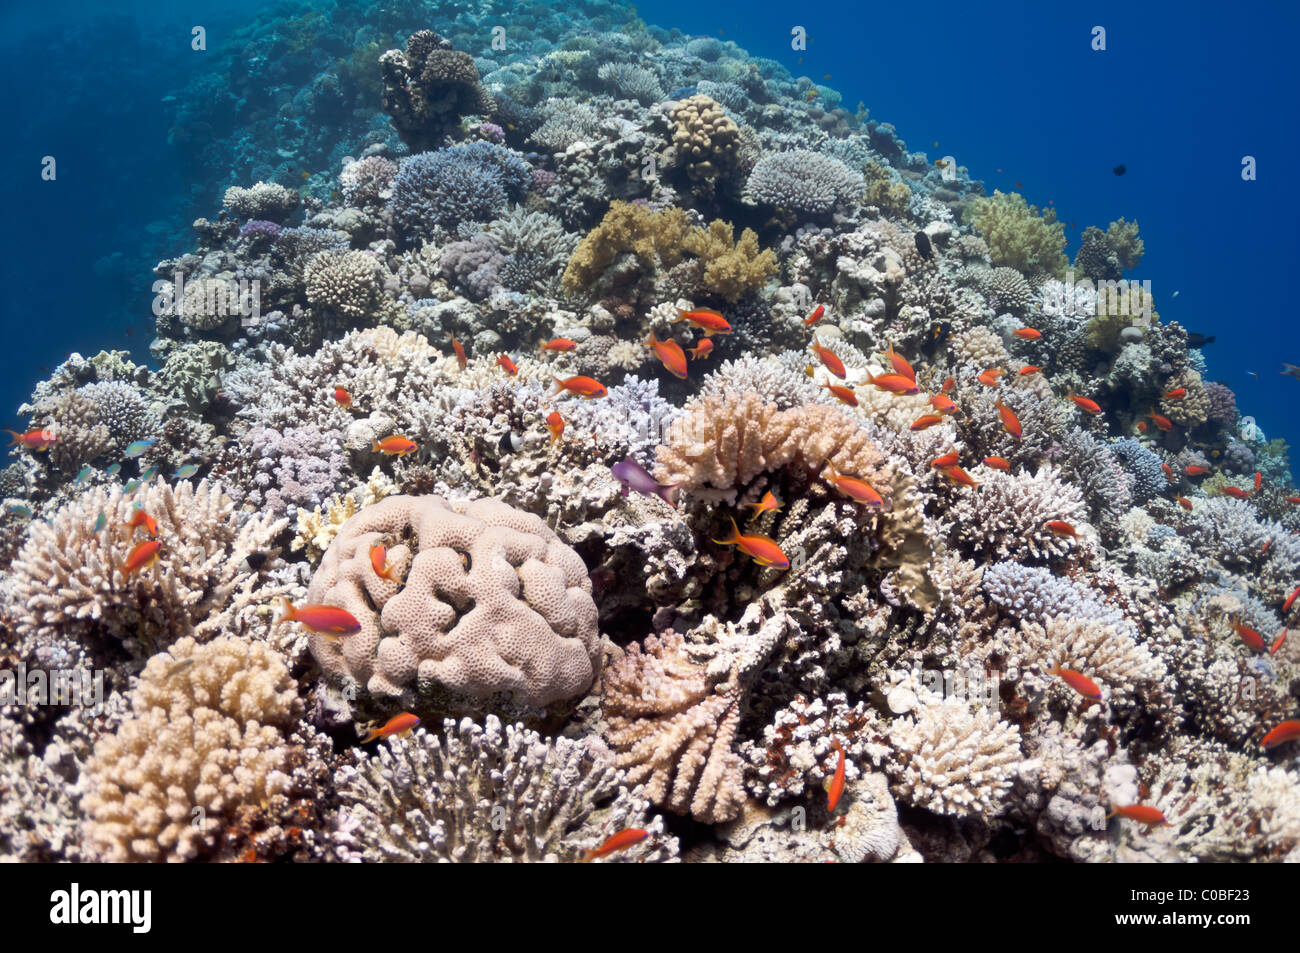 La foto mostra il Red Sea Coral reef vicino alla città di Dahab, Egitto. Ci sono diversi tipi di coralli e pesci. Foto Stock